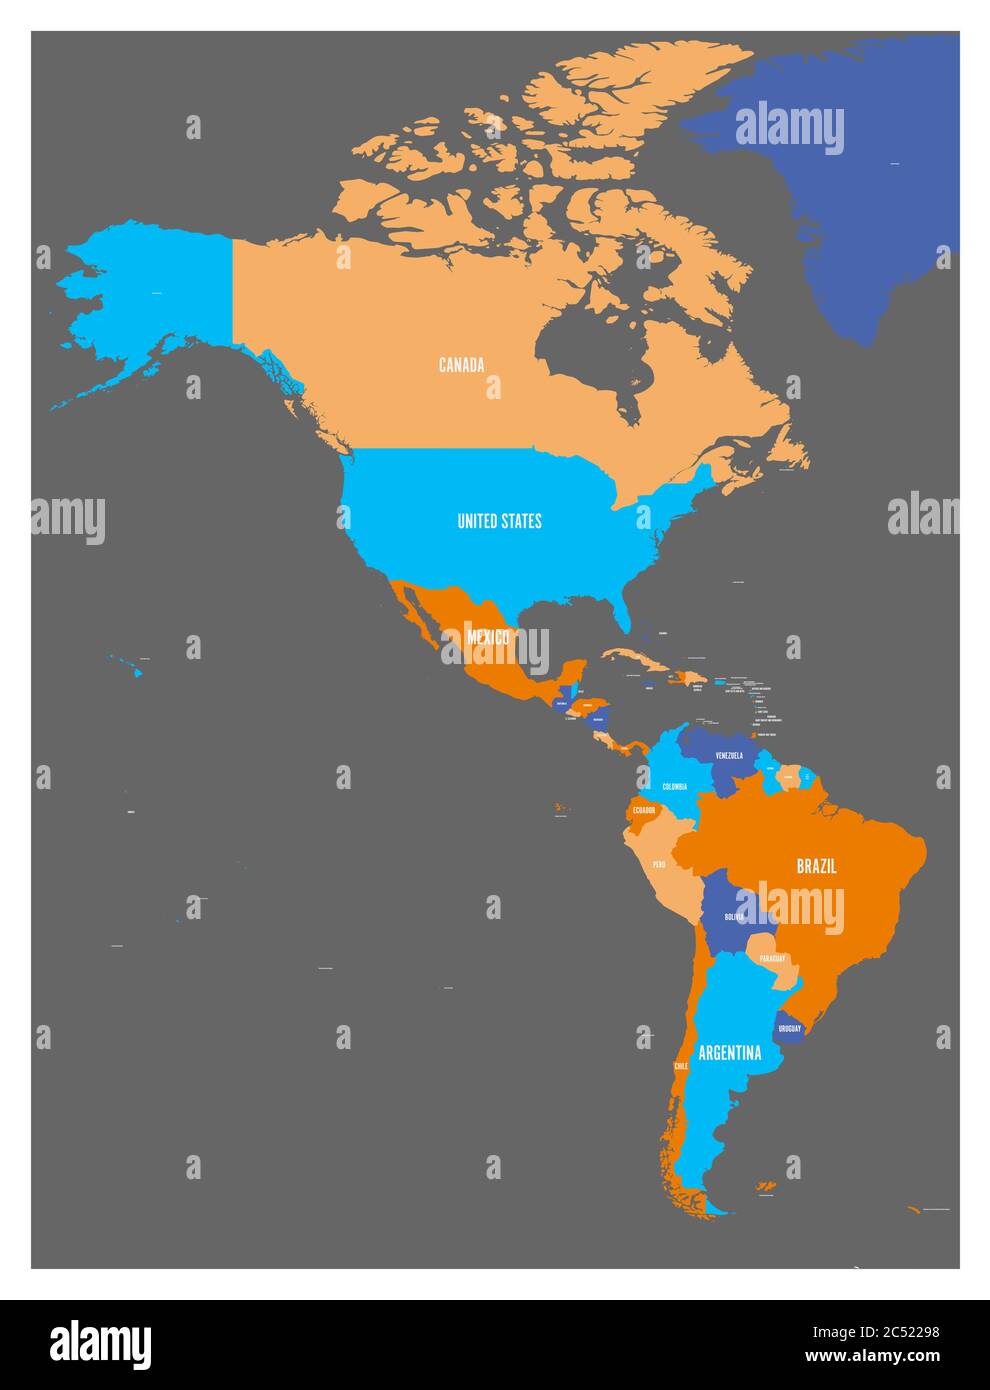 Politische Landkarte von Amerika in Foor Farben auf dunkelgrauem Hintergrund. Nord- und Südamerika mit Länderkennzeichen. Einfache flache Vektordarstellung. Stock Vektor